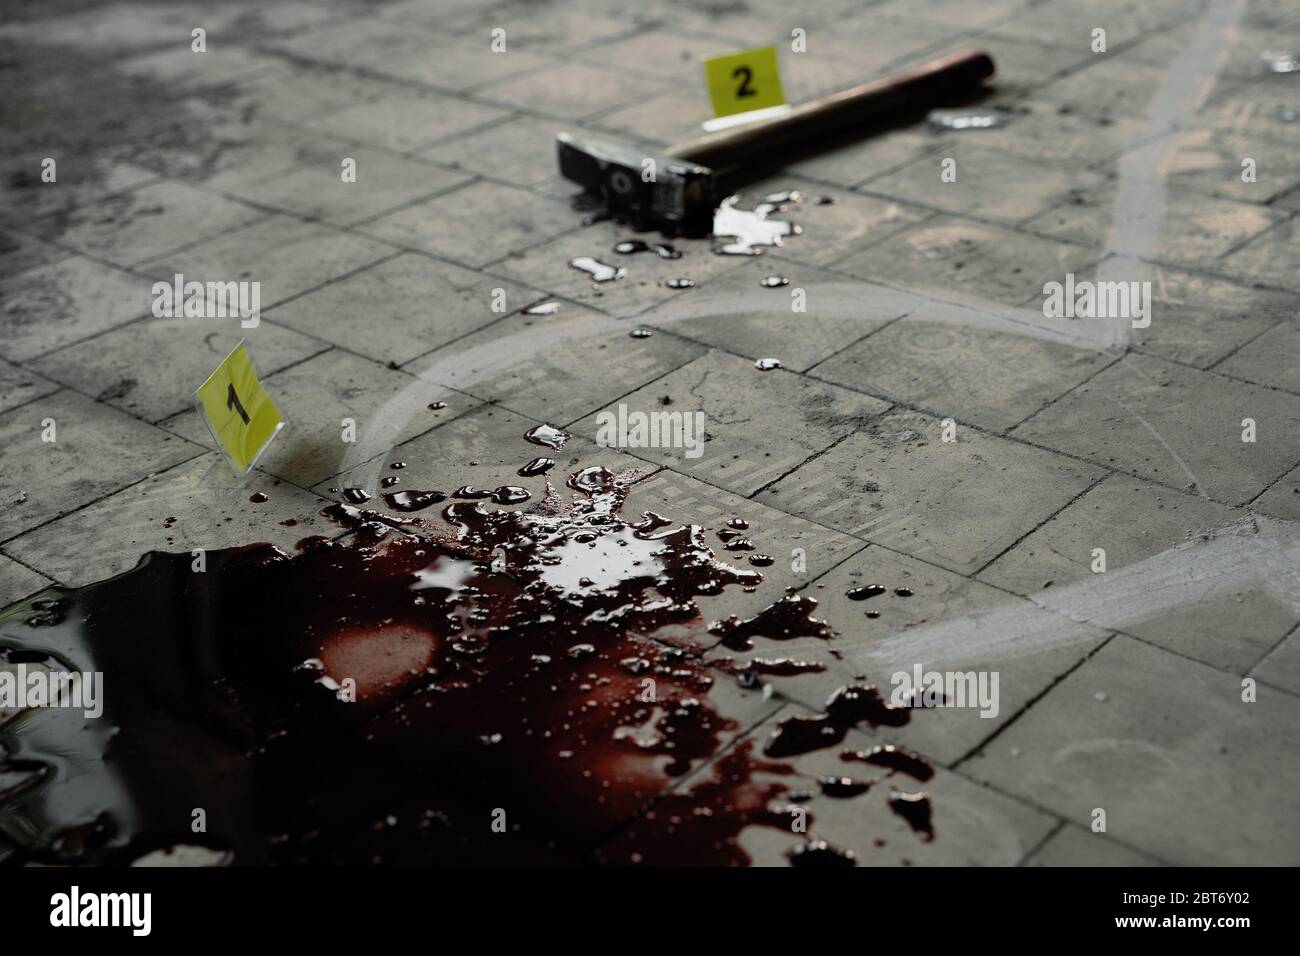 Indagini sulla scena del crimine, profilo in gesso del corpo della vittima, sangue e martello. Foto Stock